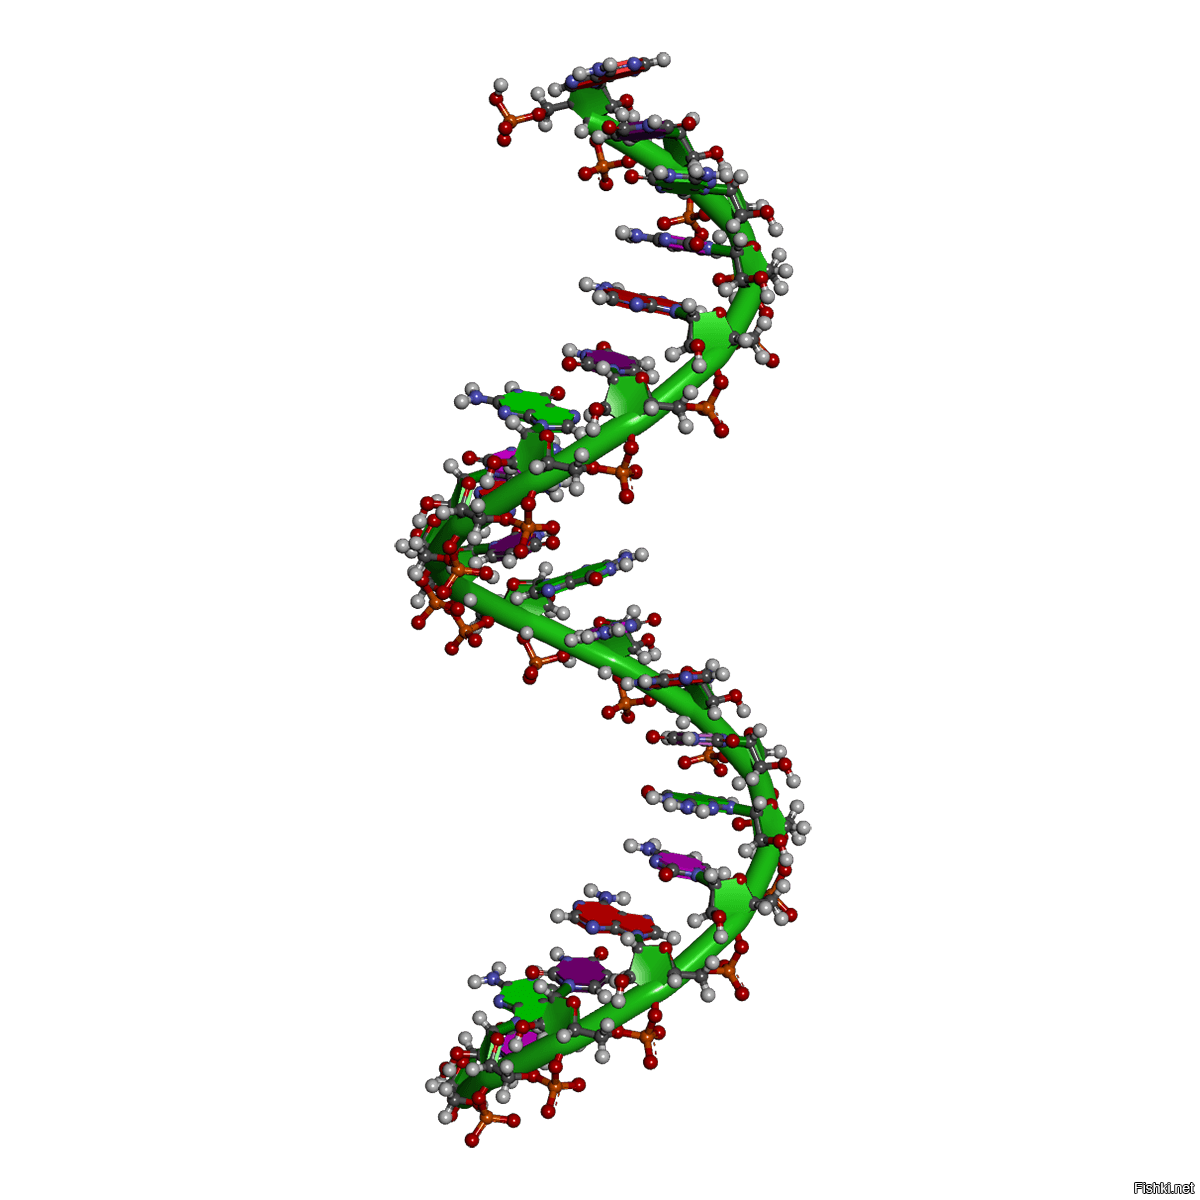 Рисунок молекулы рнк. Молекула РНК. Одноцепочная молекула РНК. Одноцепочечная РНК. РНК рисунок биология.